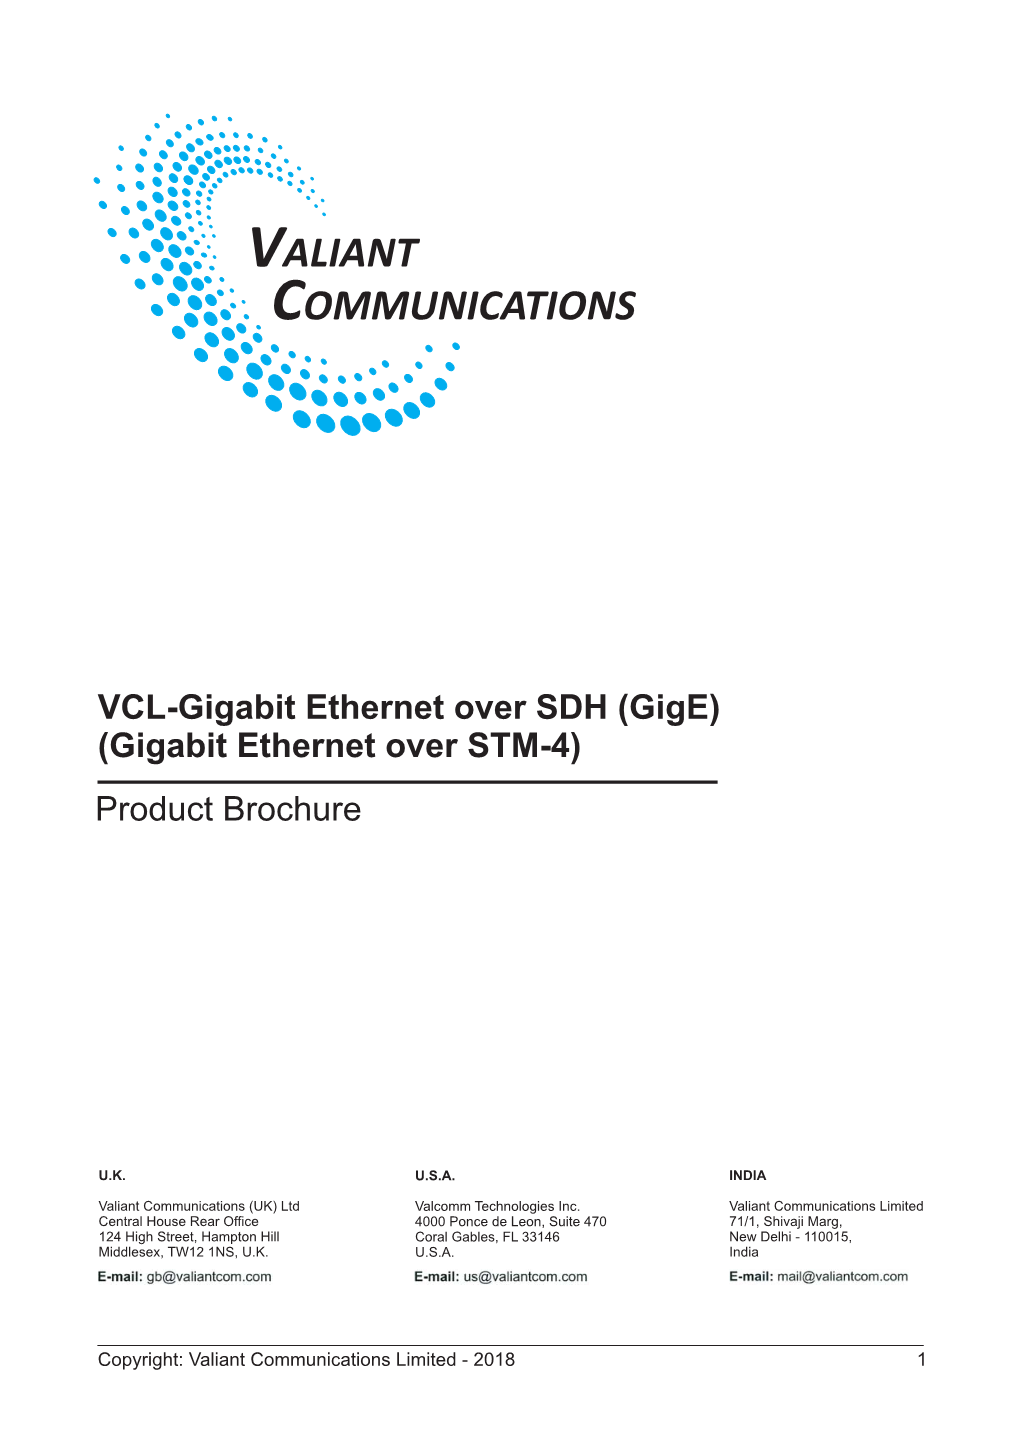 VCL-Gigabit Ethernet Over SDH (Gige) (Gigabit Ethernet Over STM- 4 ) Product Brochure